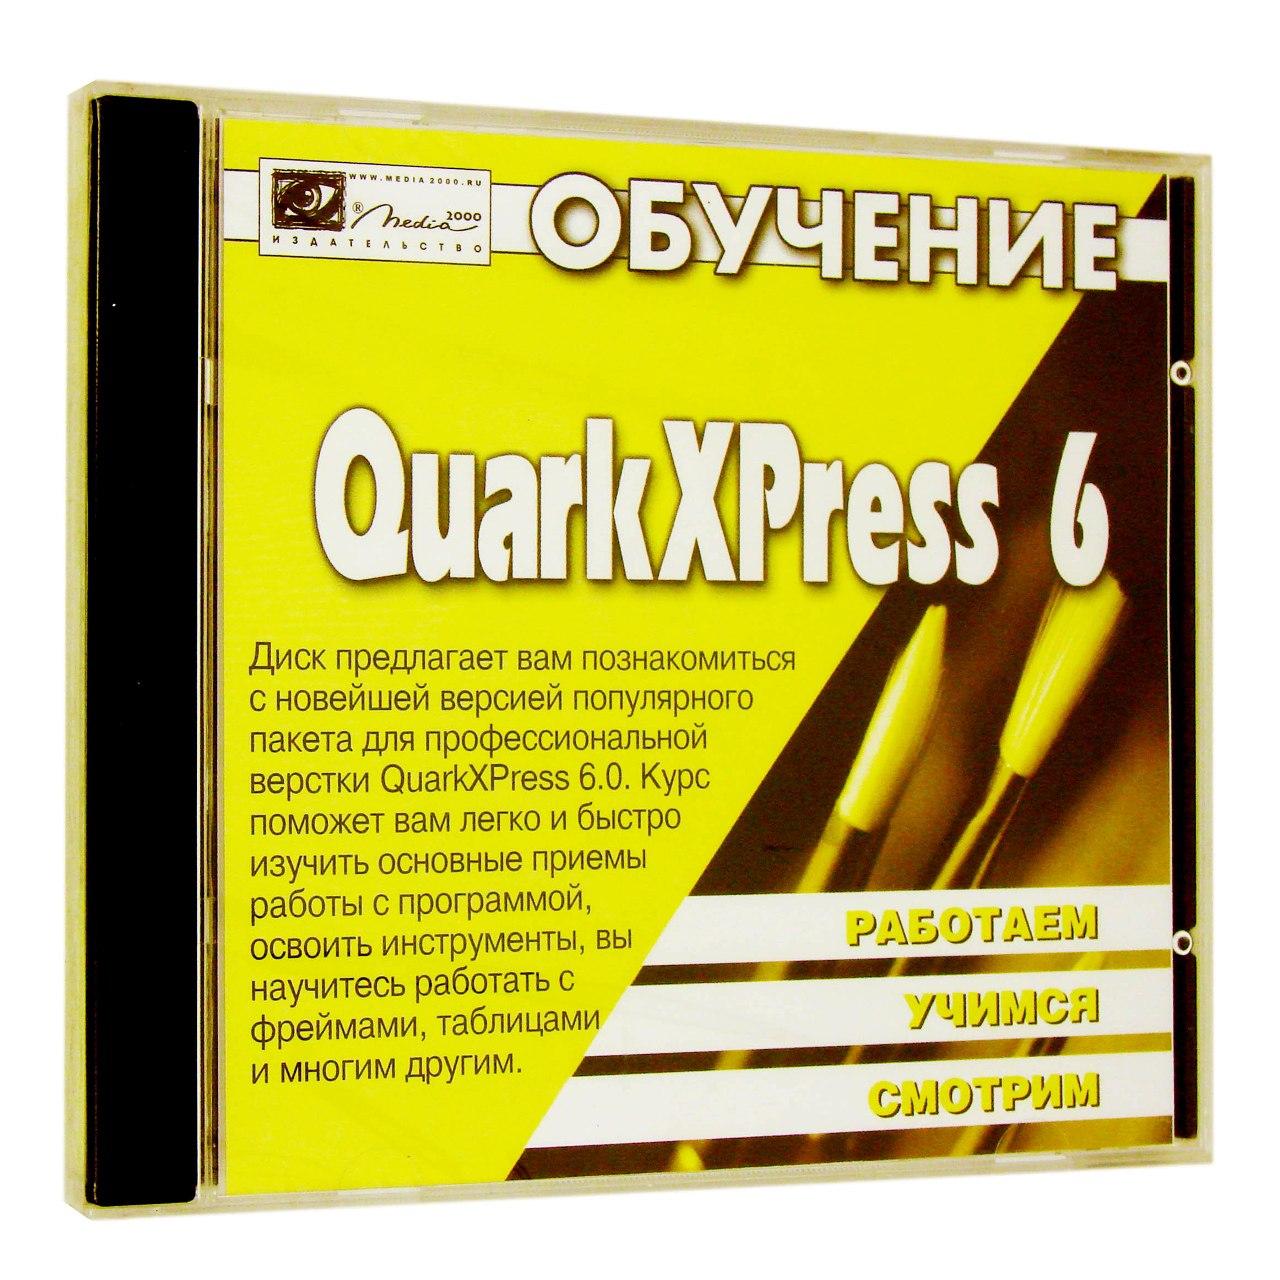 Компьютерный компакт-диск Обучение Quark XPress 6 (PC), фирма "Медиа 2000", 1CD